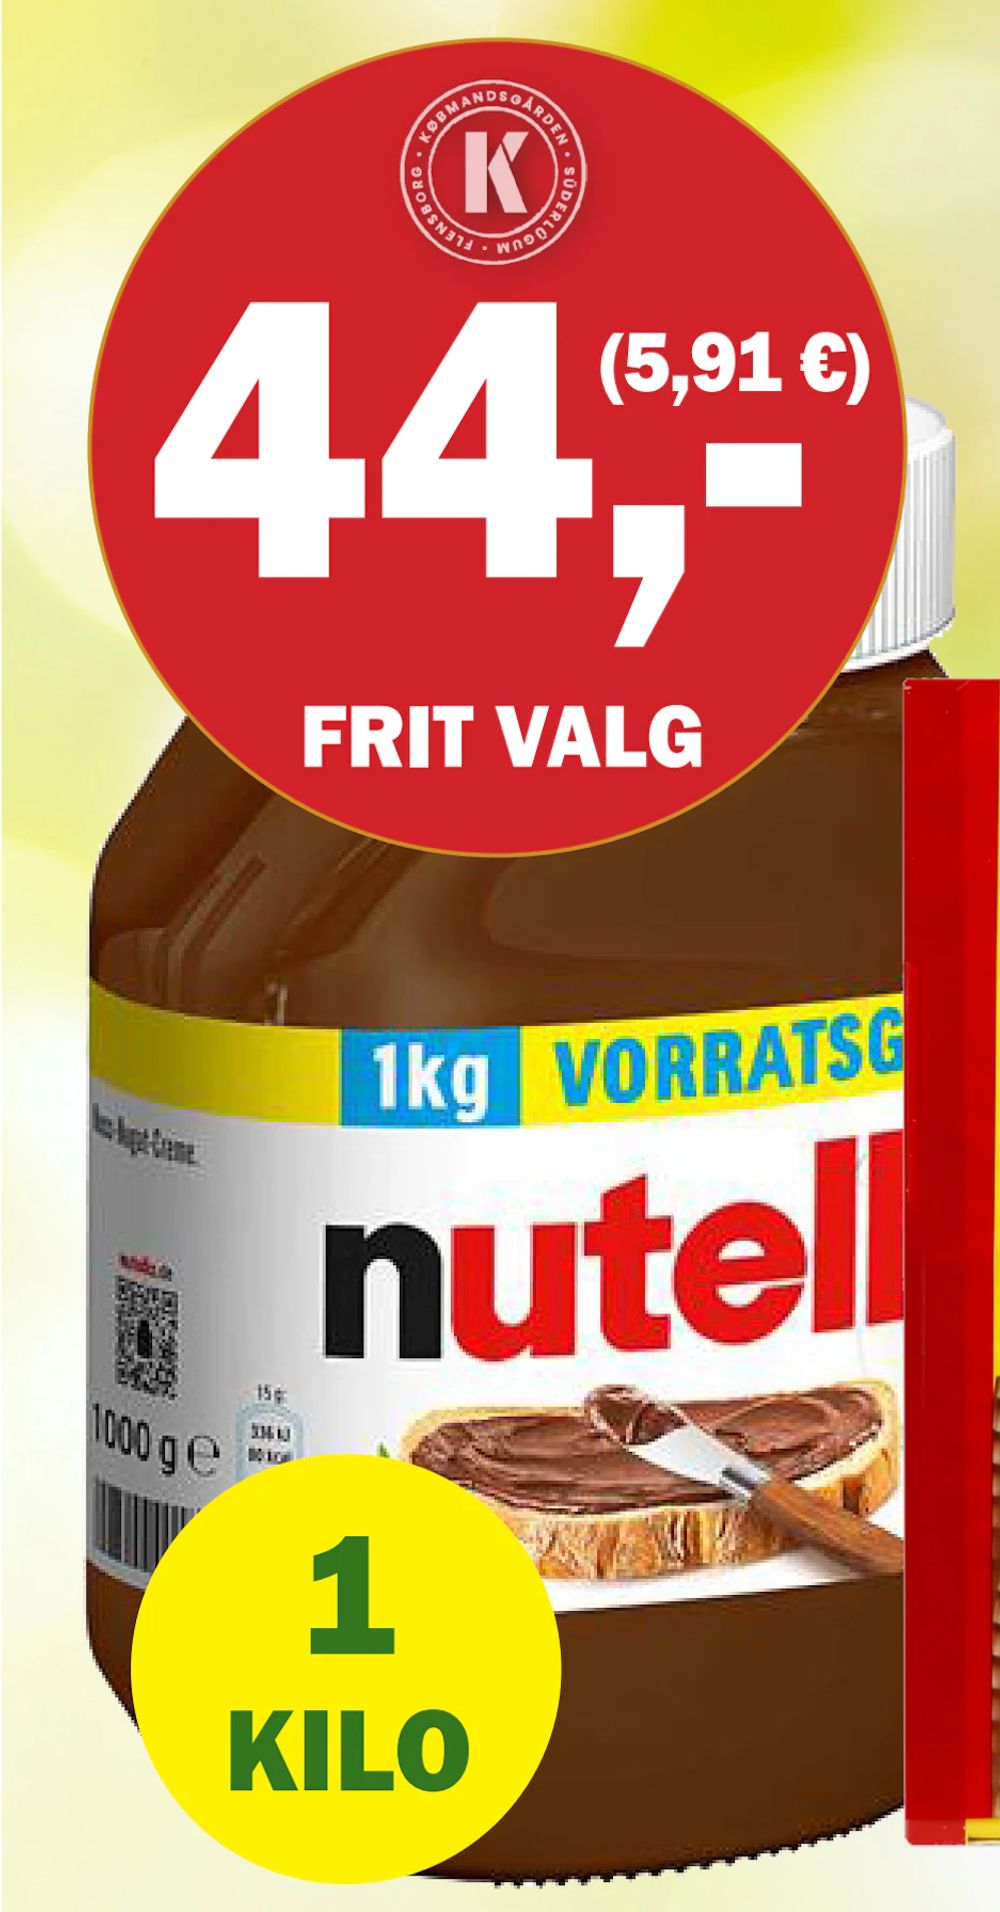 Tilbud på Nutella fra Købmandsgården til 44 kr.